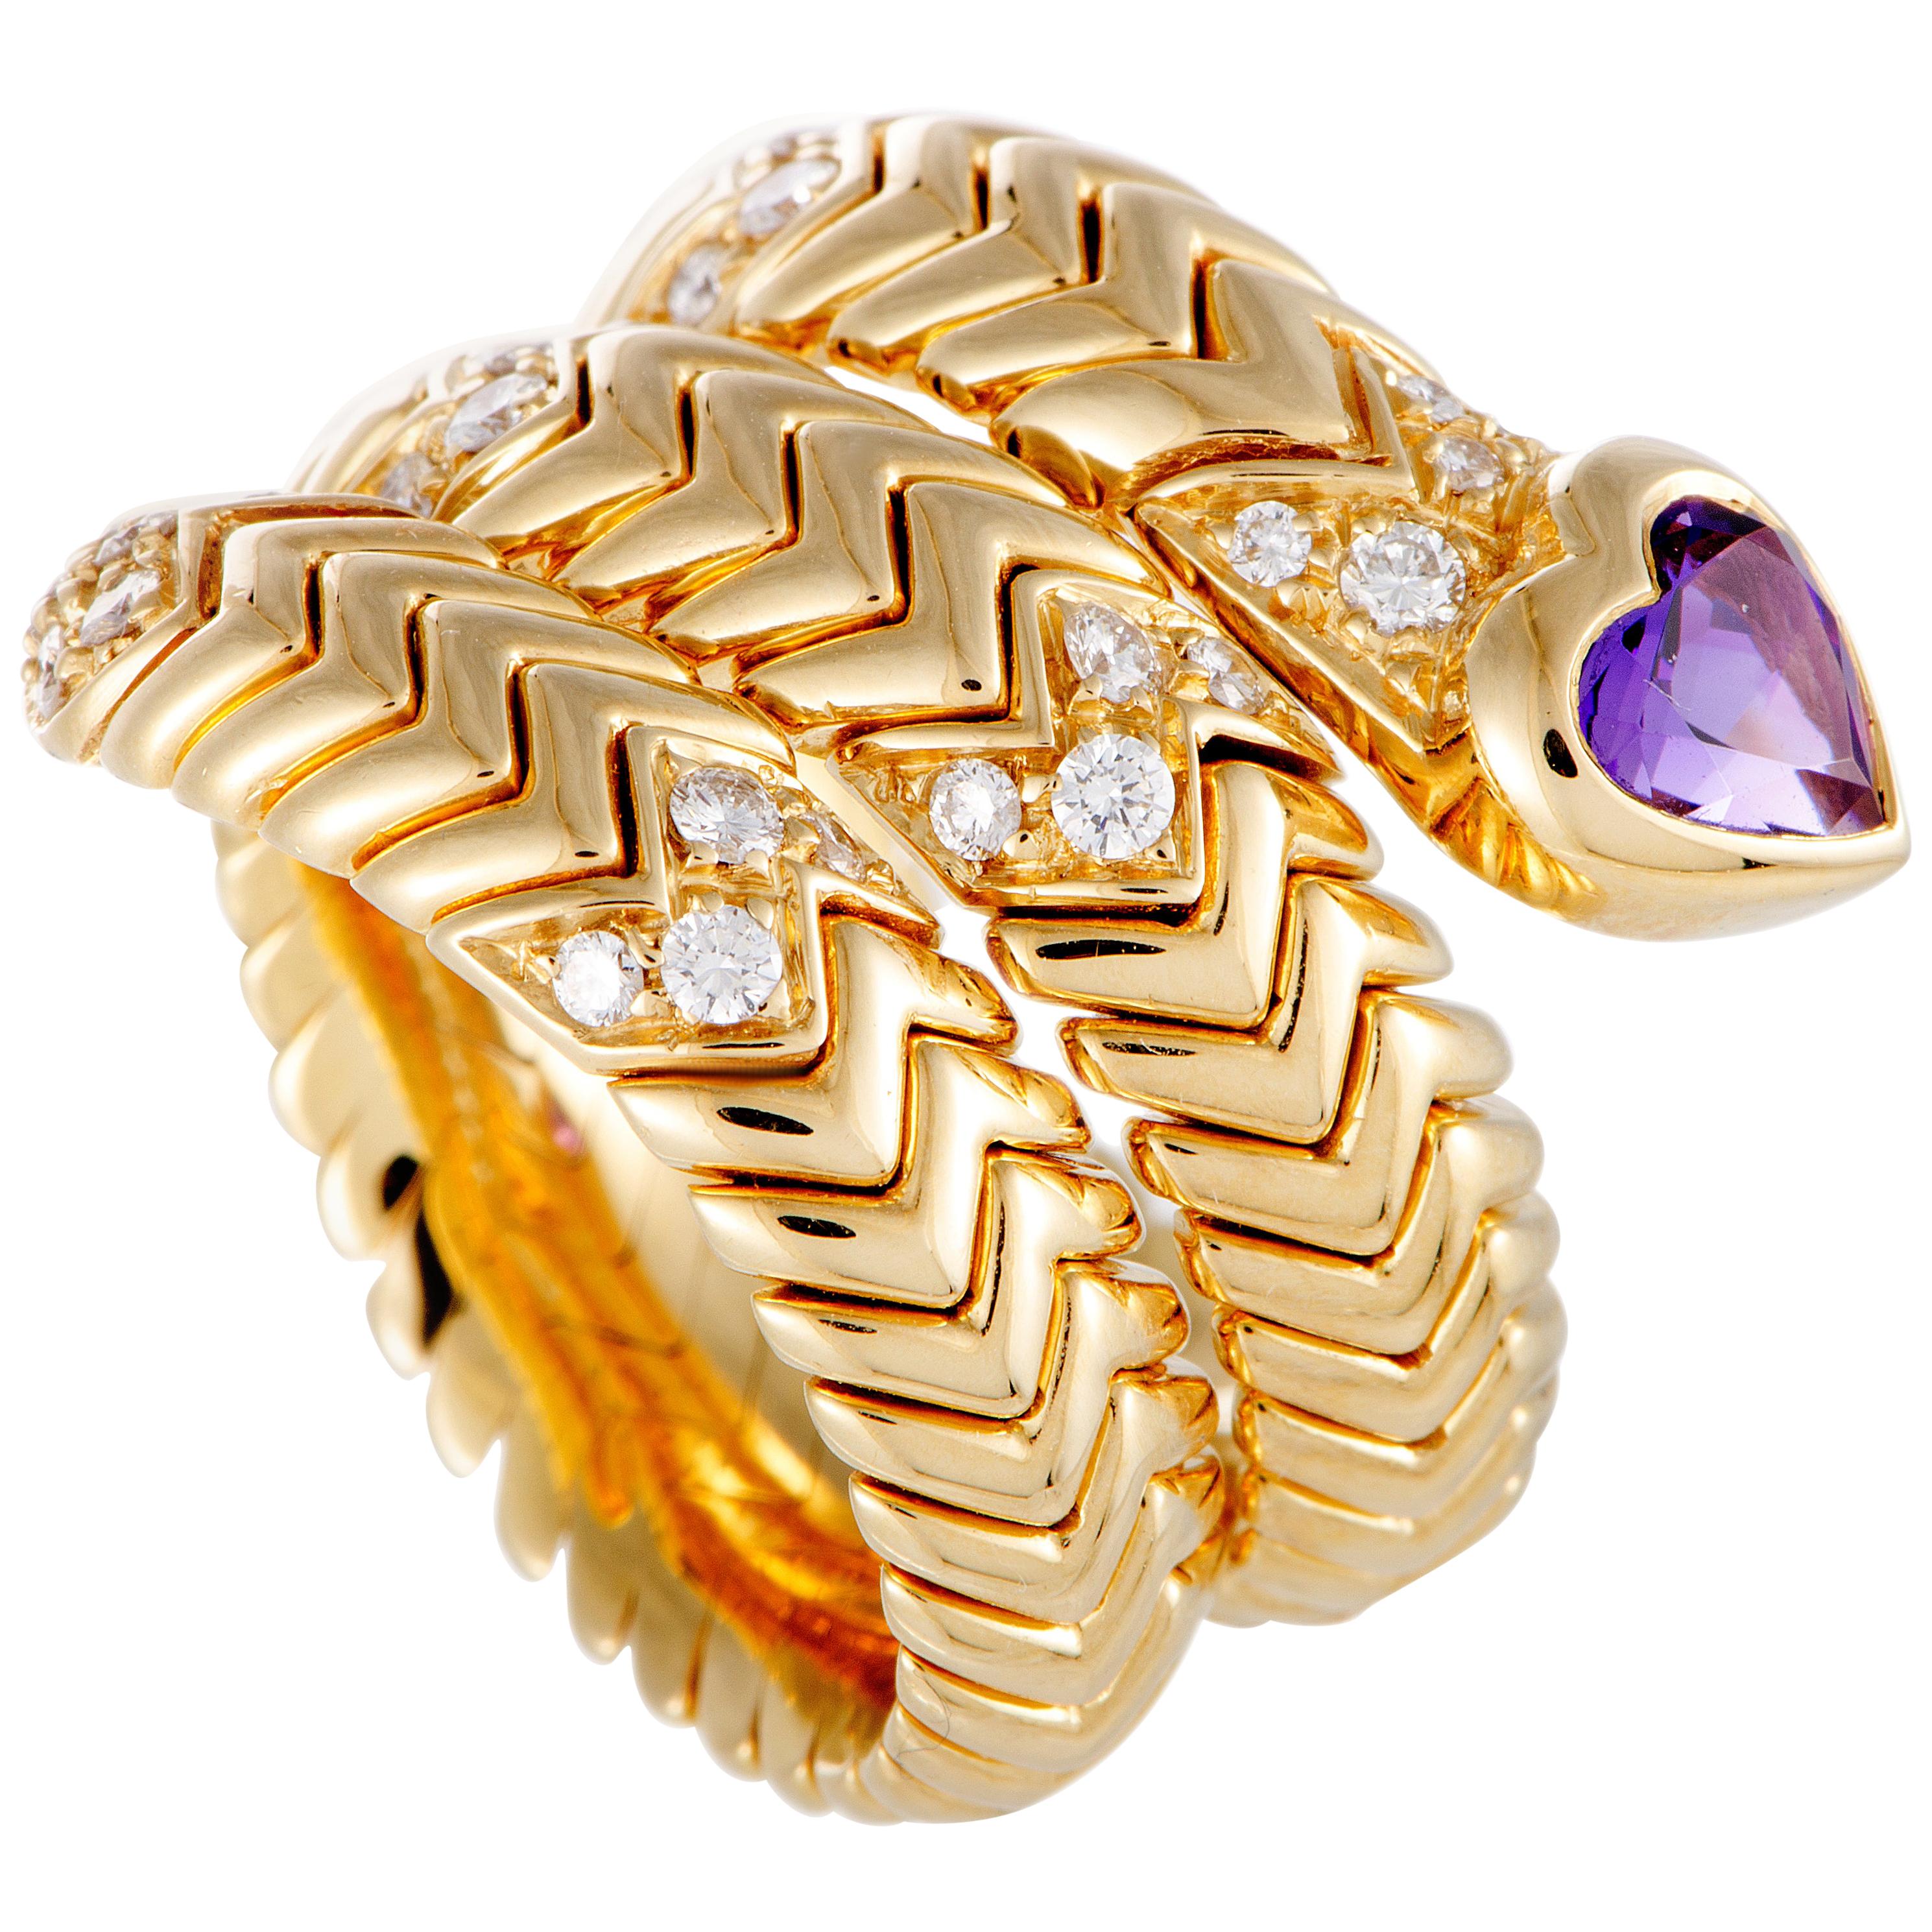 Bulgari Spiga Diamond and Amethyst Yellow Gold Heart Band Ring